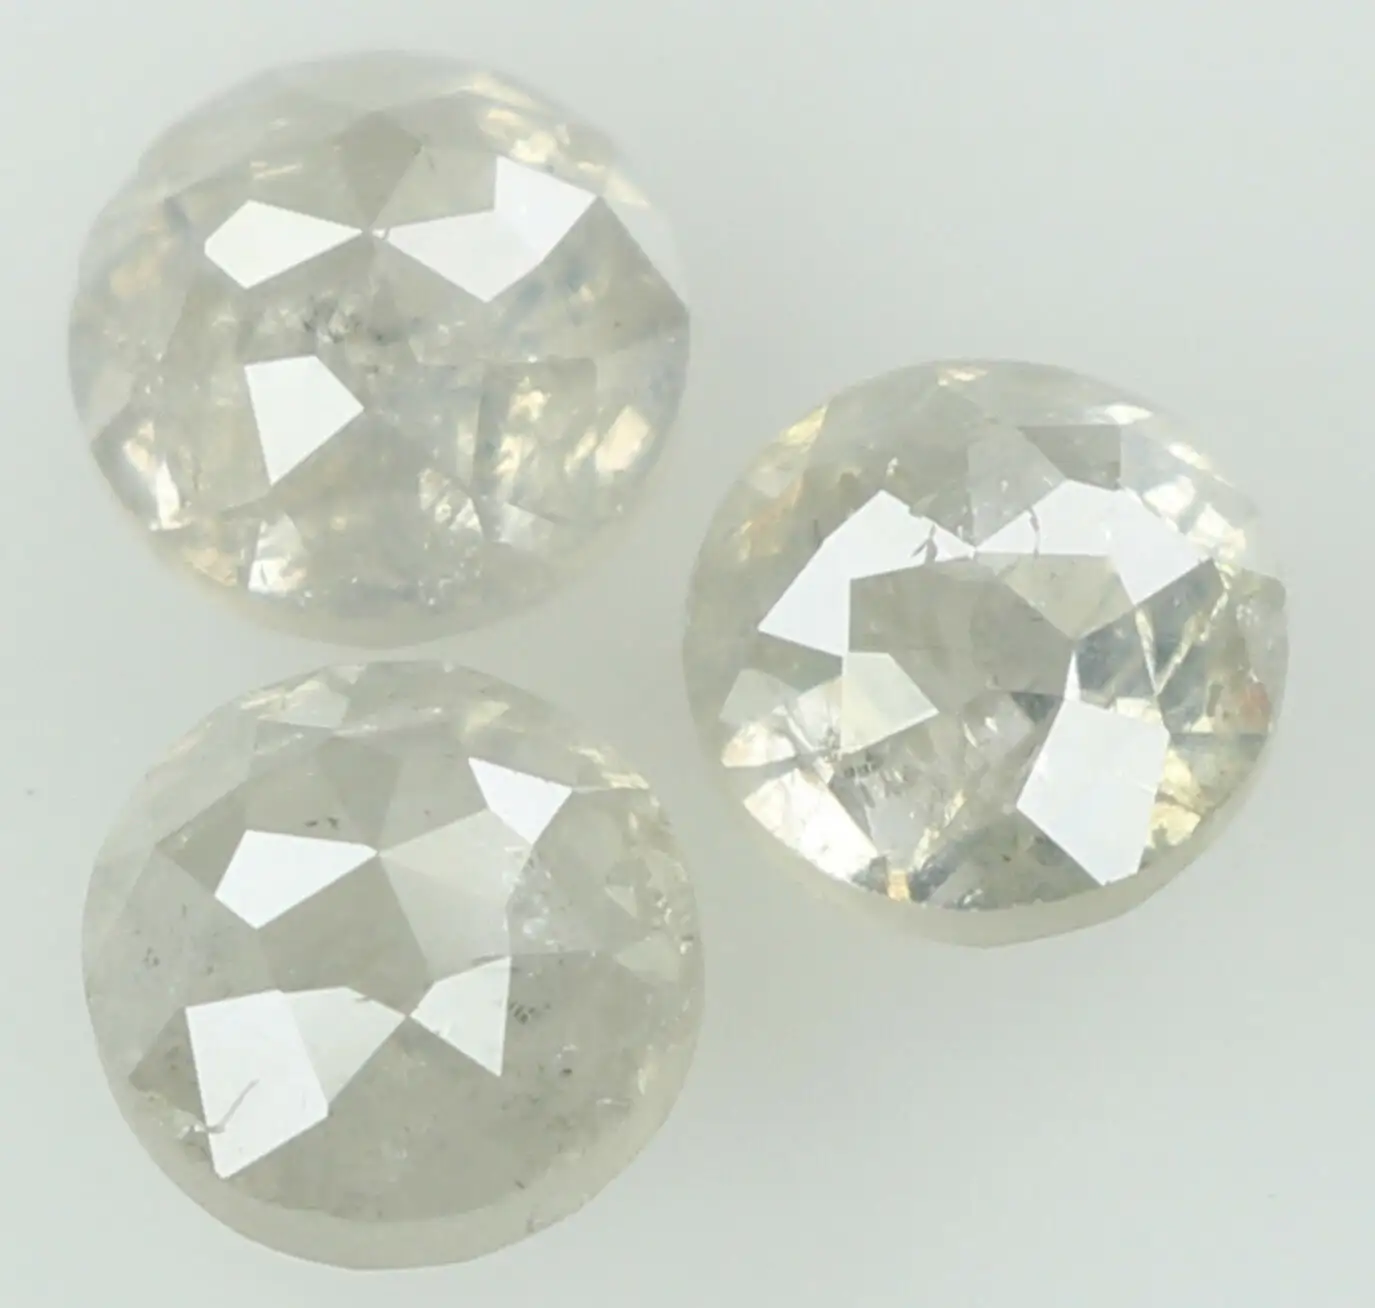 Doğal beyaz renk gül kesme Chakri Diamonds toptan eşya fiyat hindistan, tuz ve biber elmas % 100% doğal